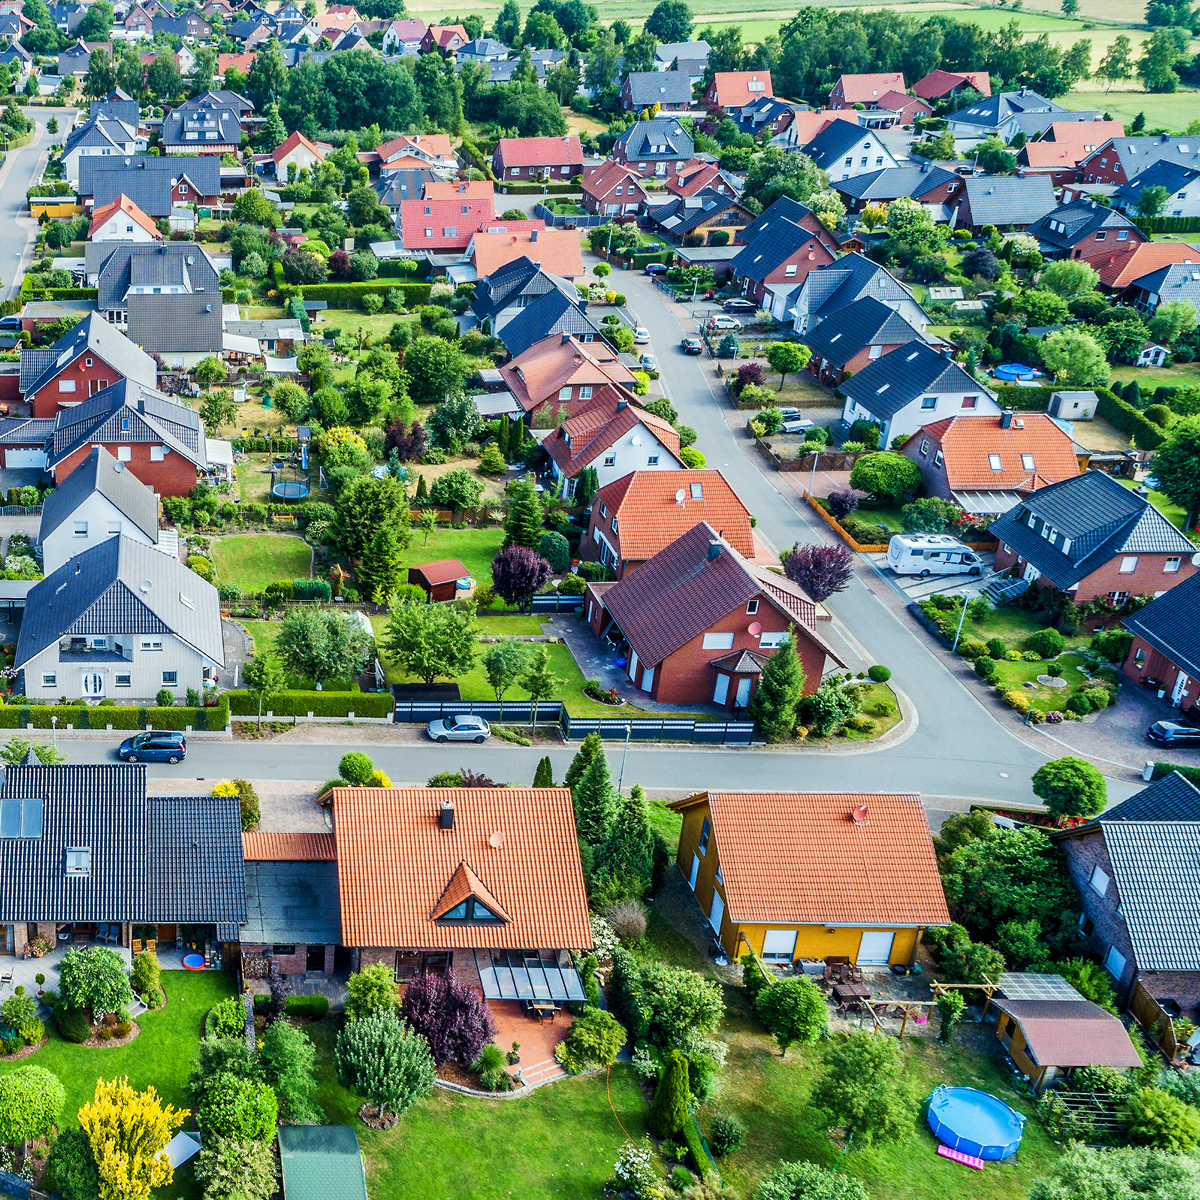 Vue aérienne d'une banlieue avec des maisons individuelles